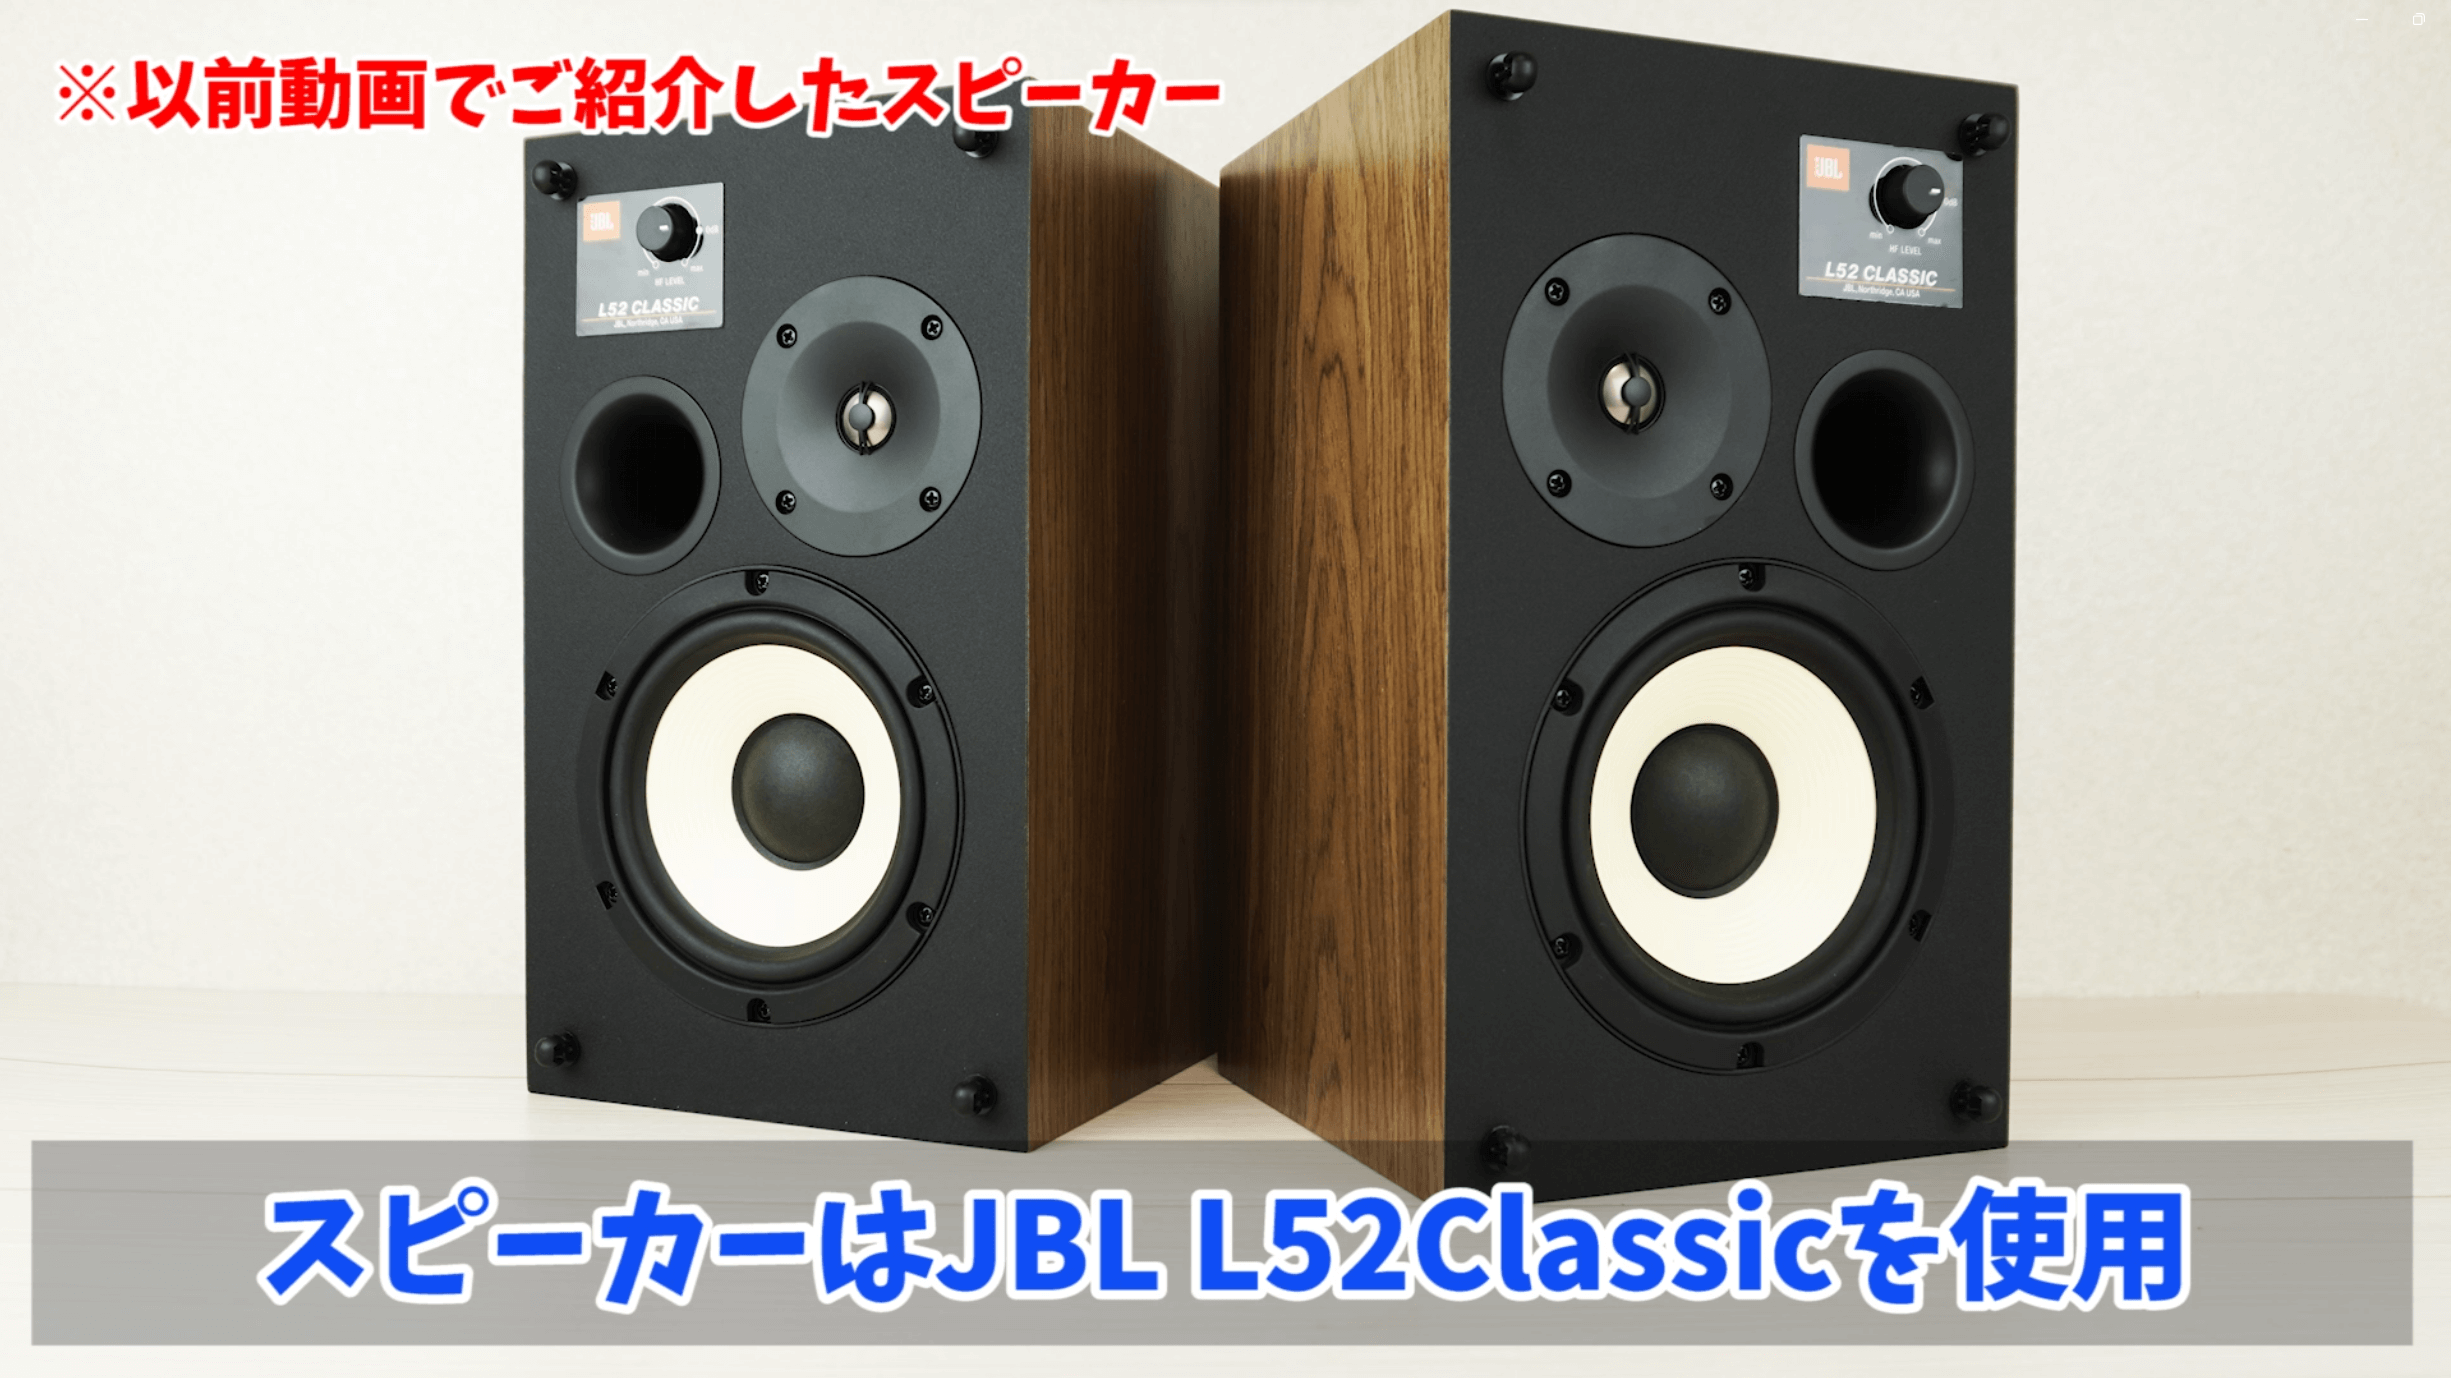 jbl L52Classic